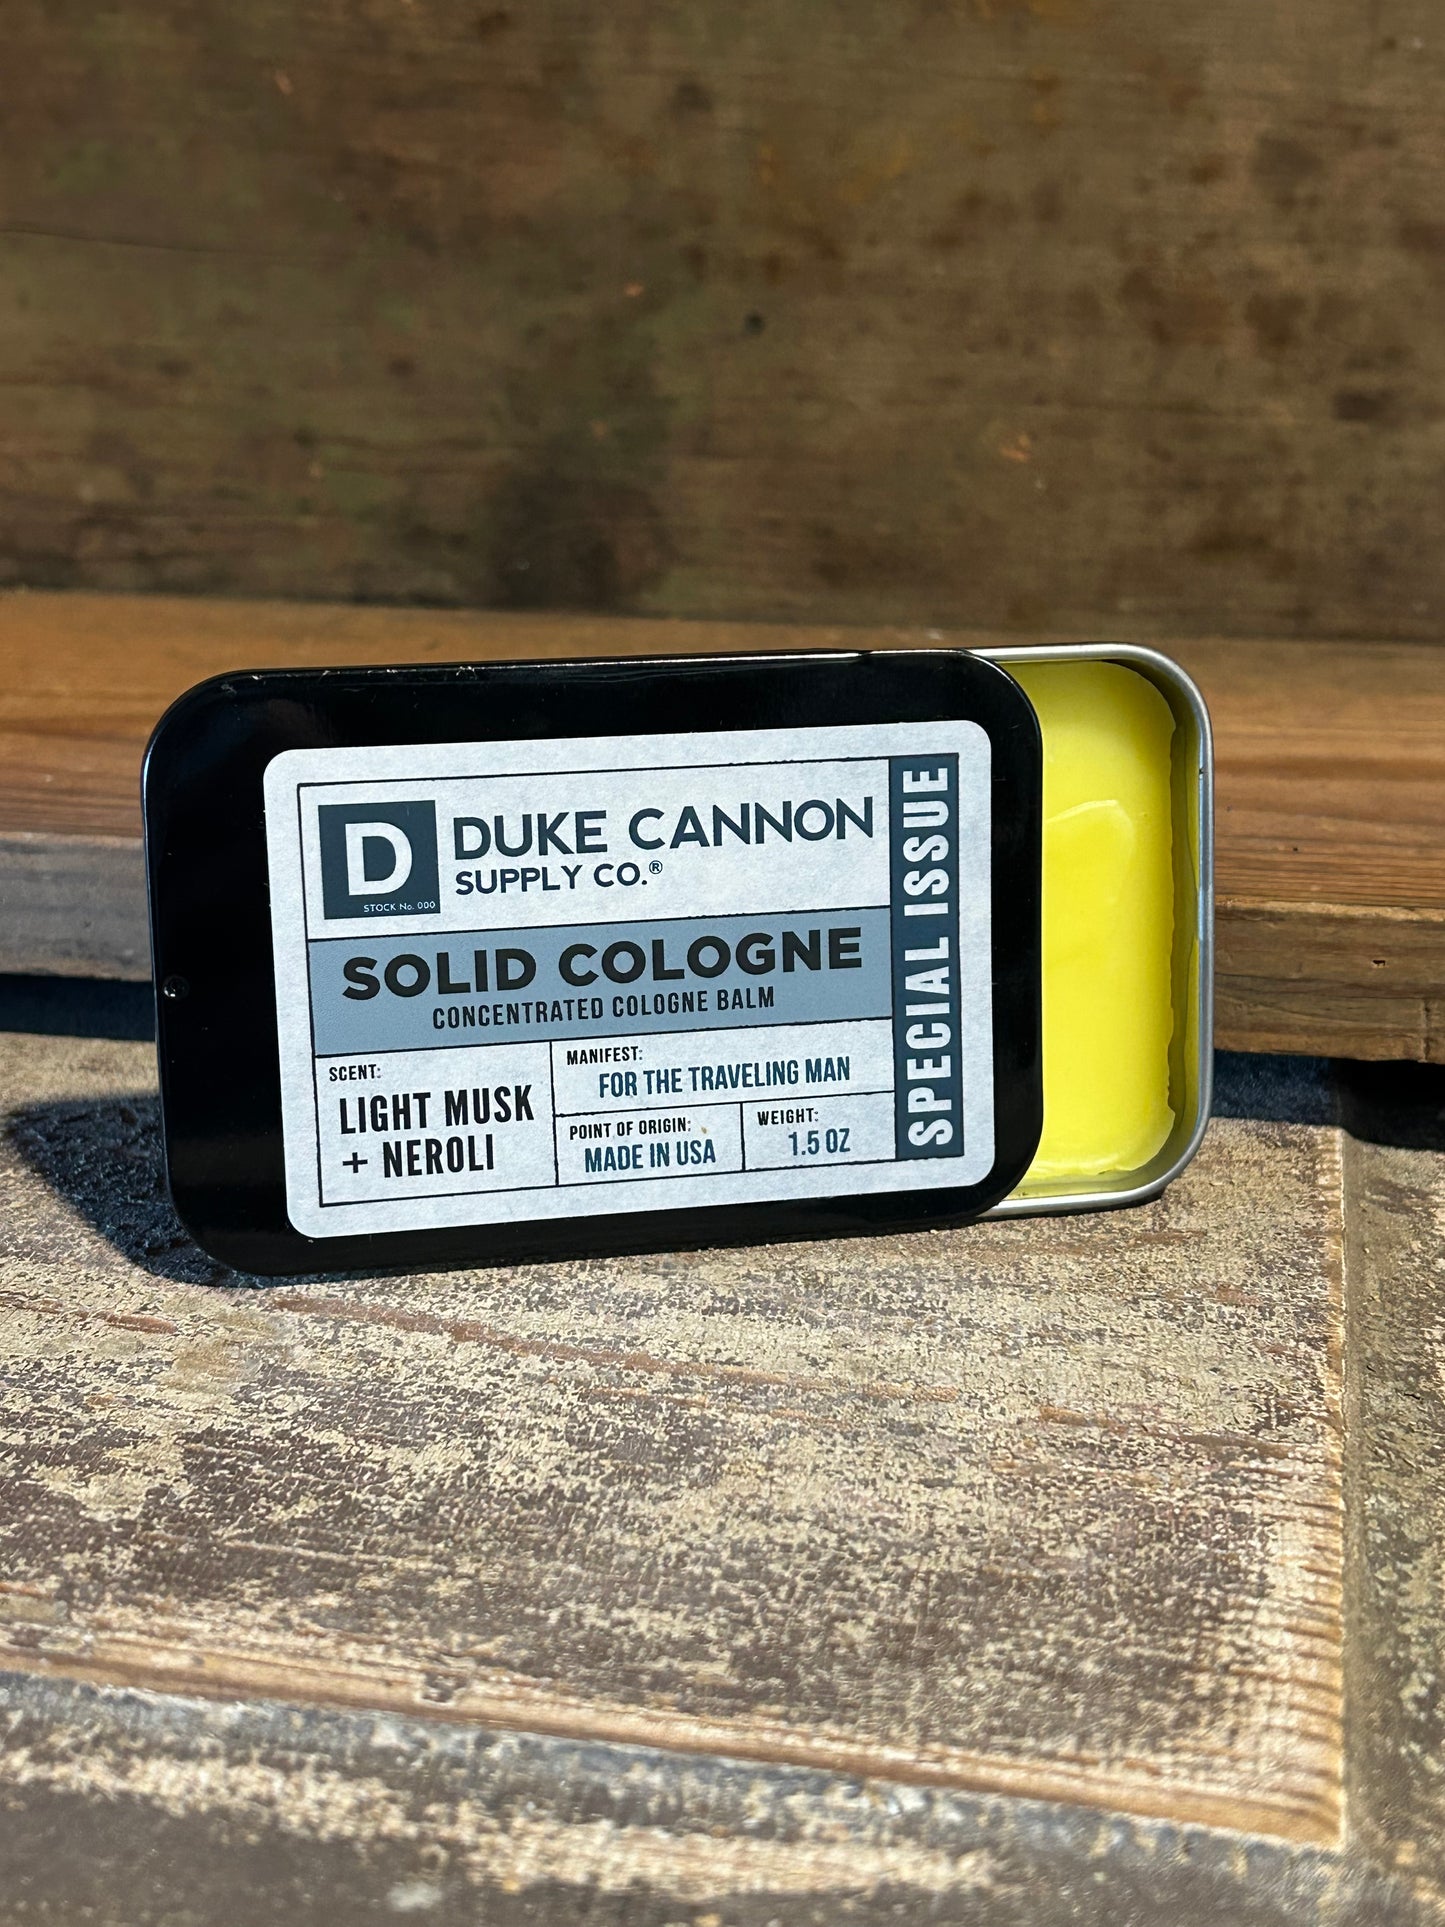 Duke Cannon solid cologne